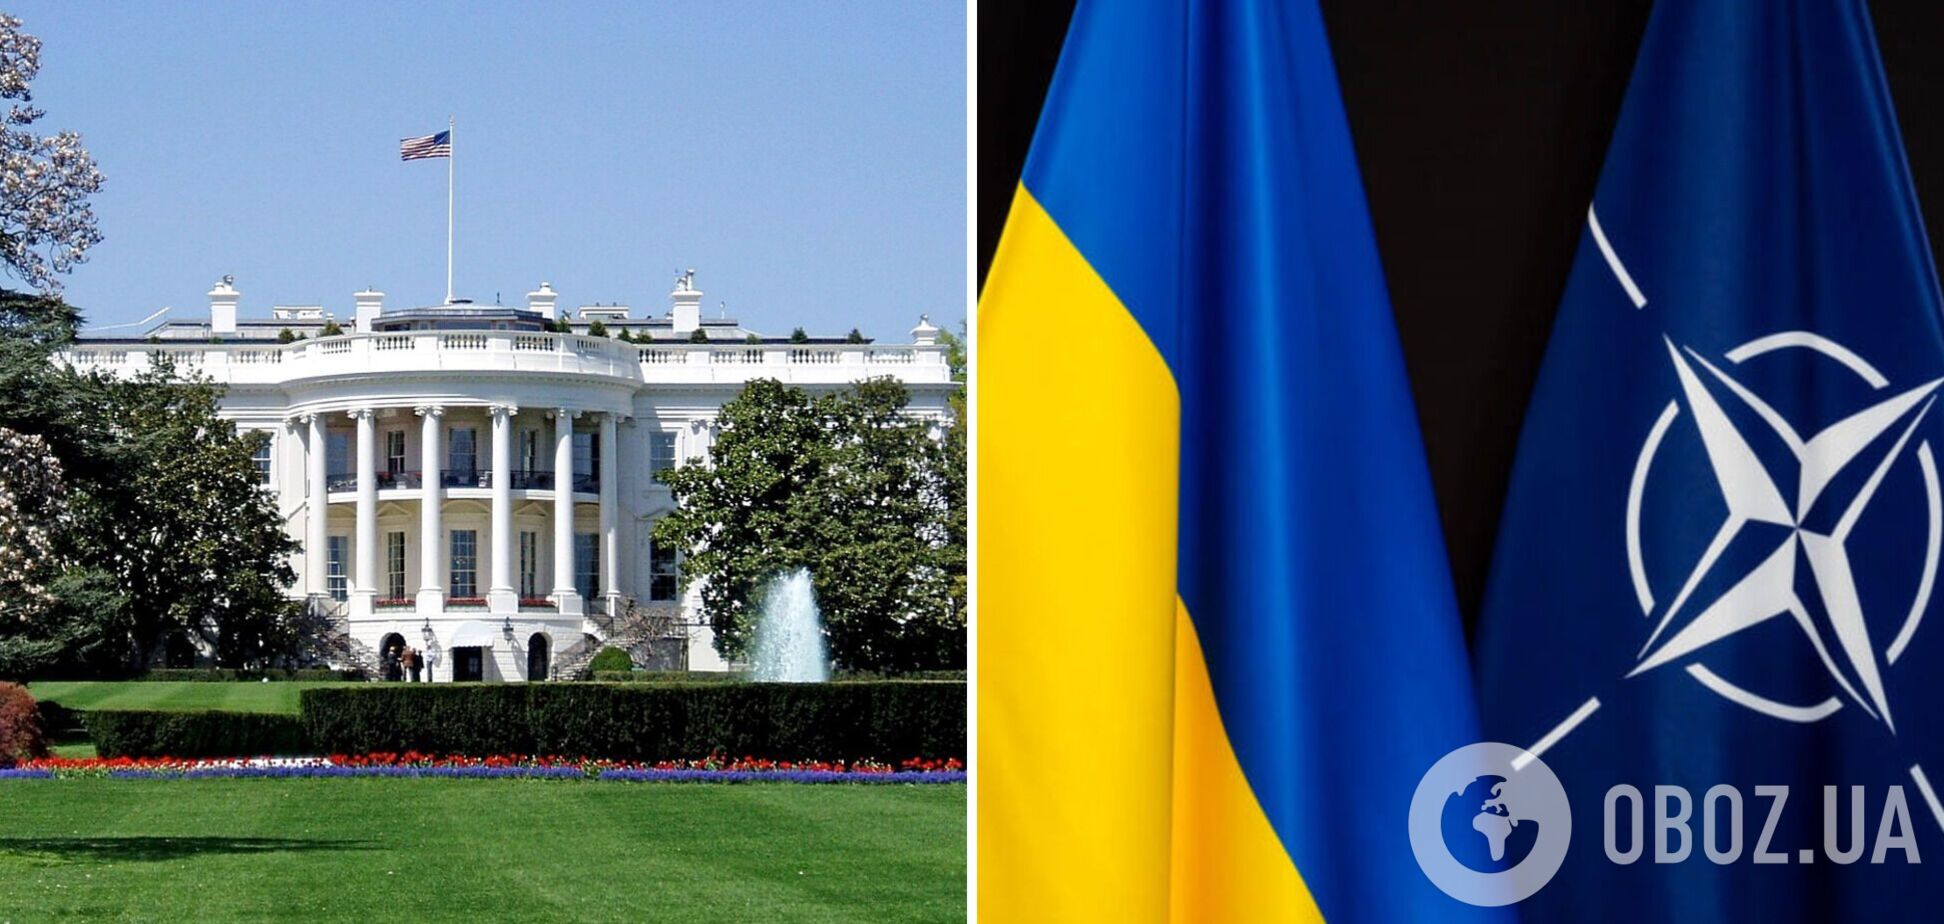 Доки йде війна, вступ України до НАТО малоймовірний: у Білому домі пояснили, чому